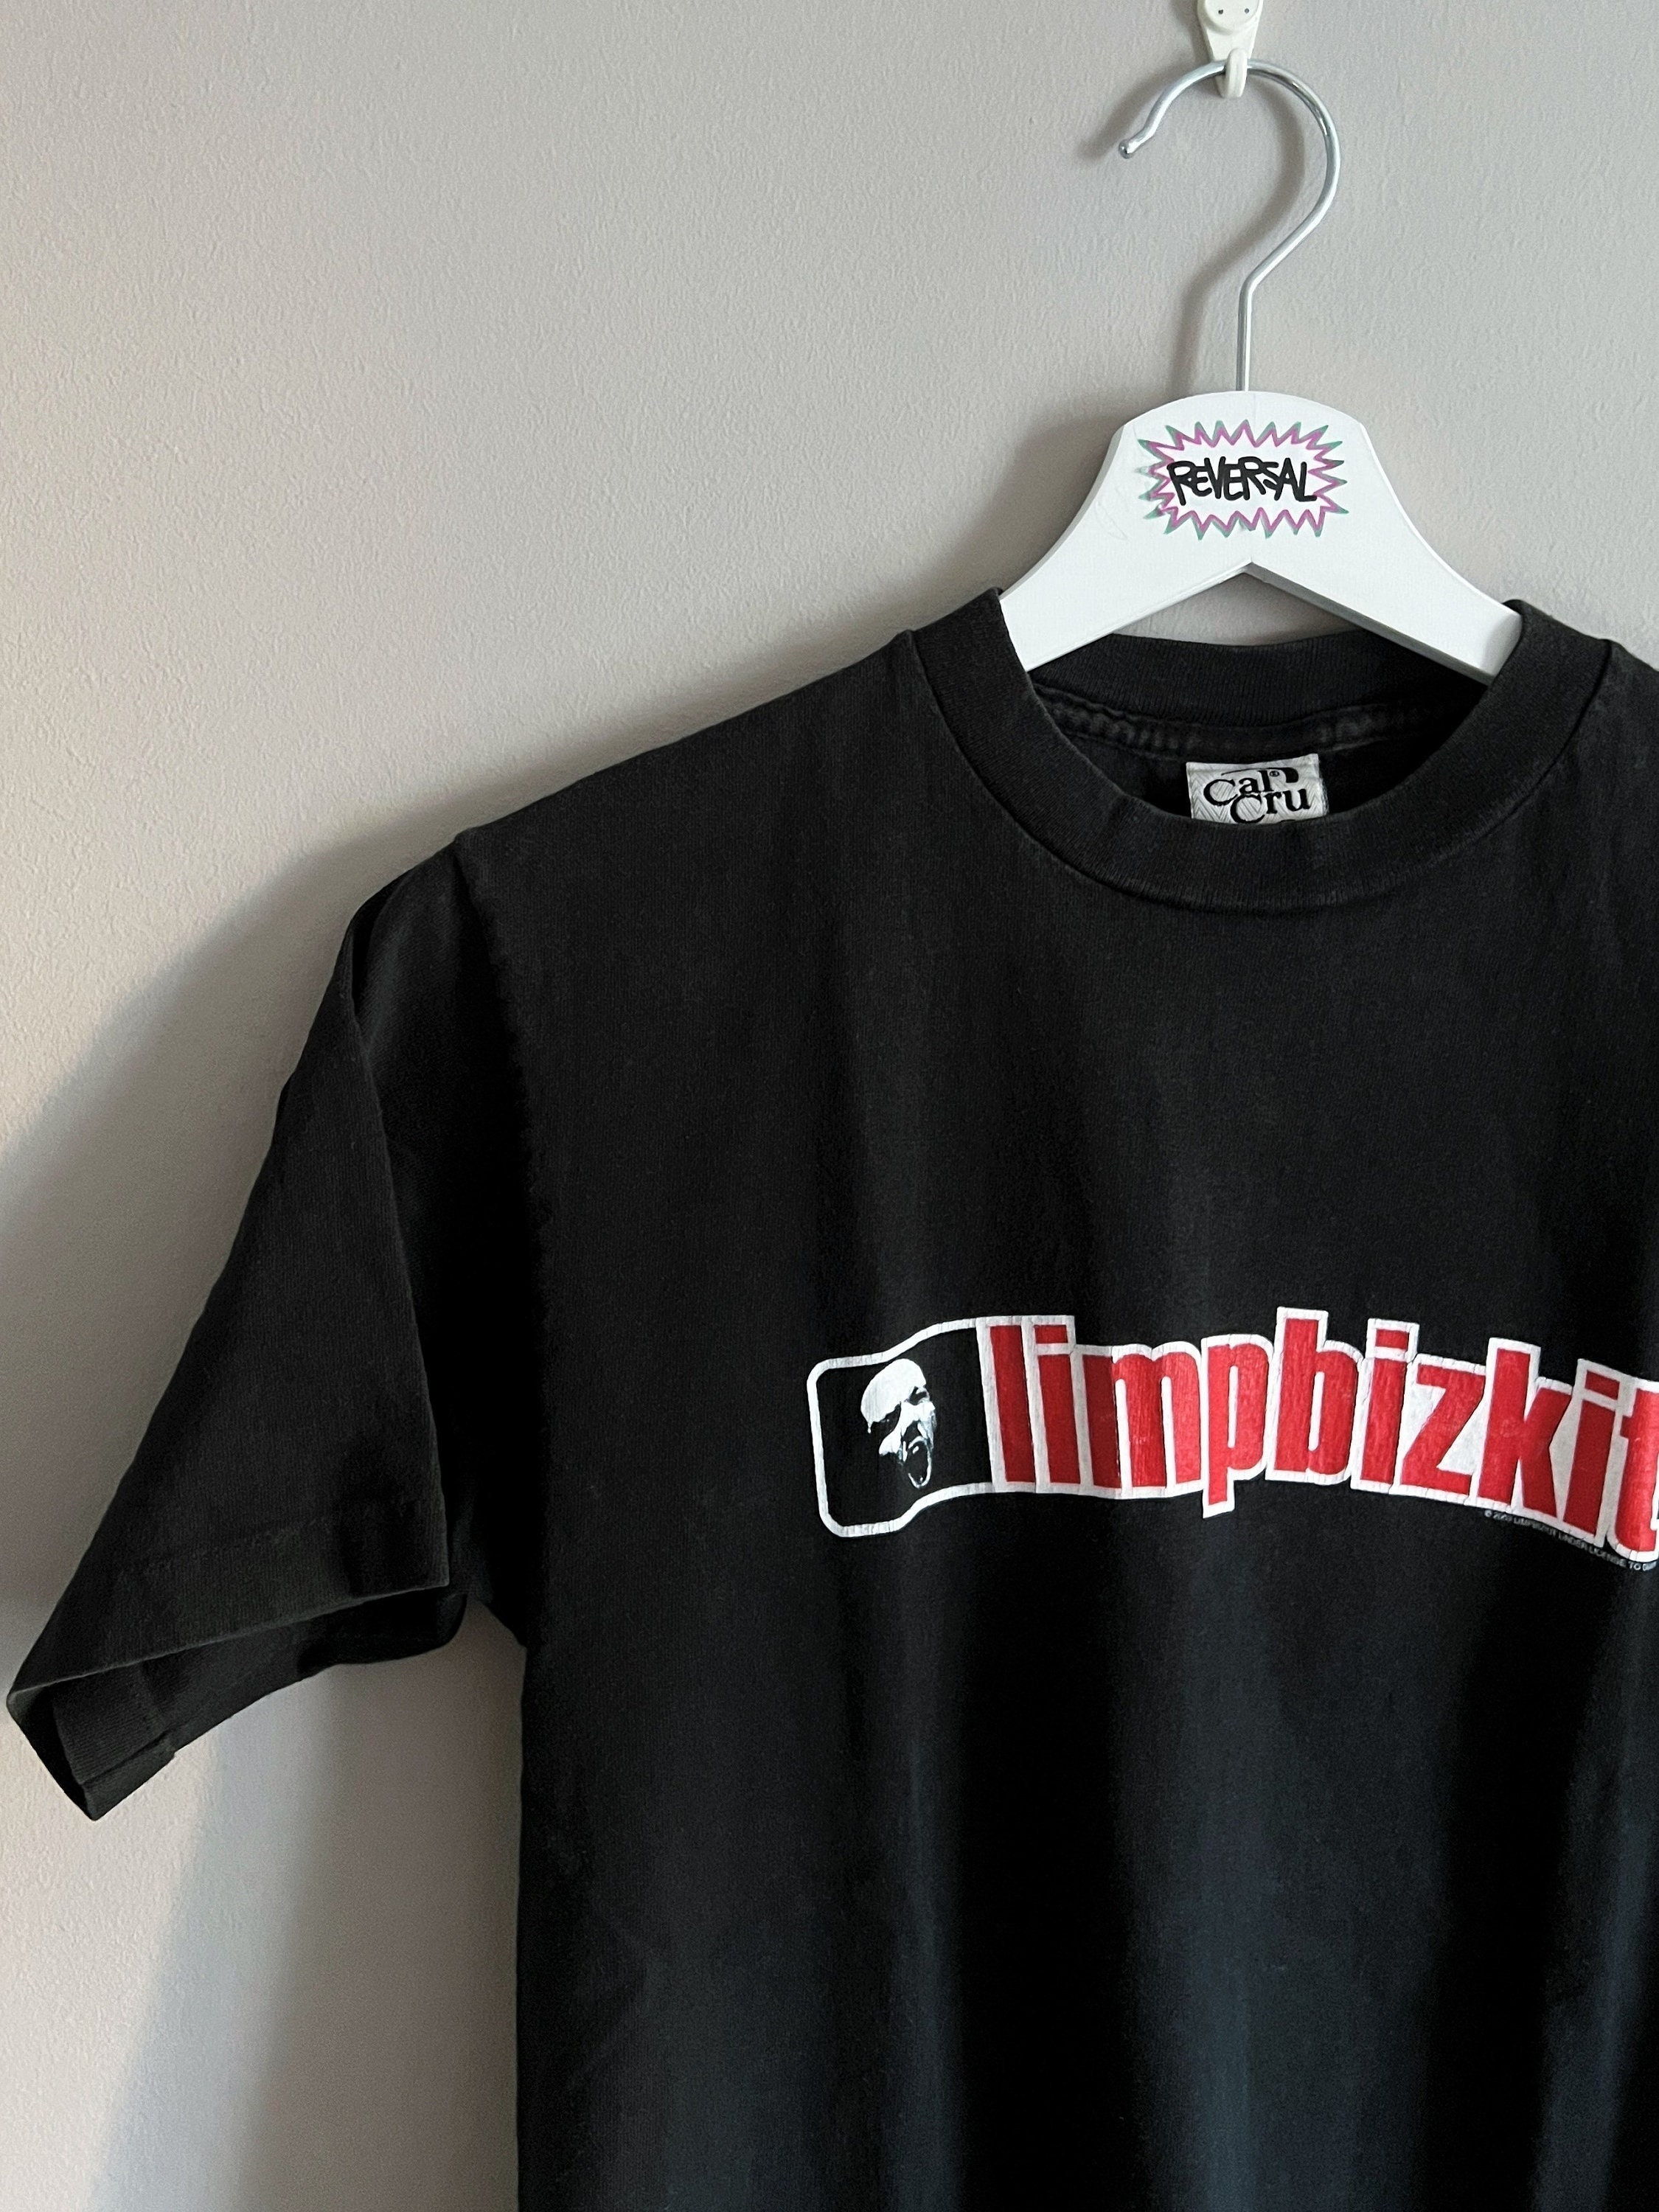 Limp Bizkit 2003 Back2basics Tour Tshirt RARE Vintage S Small